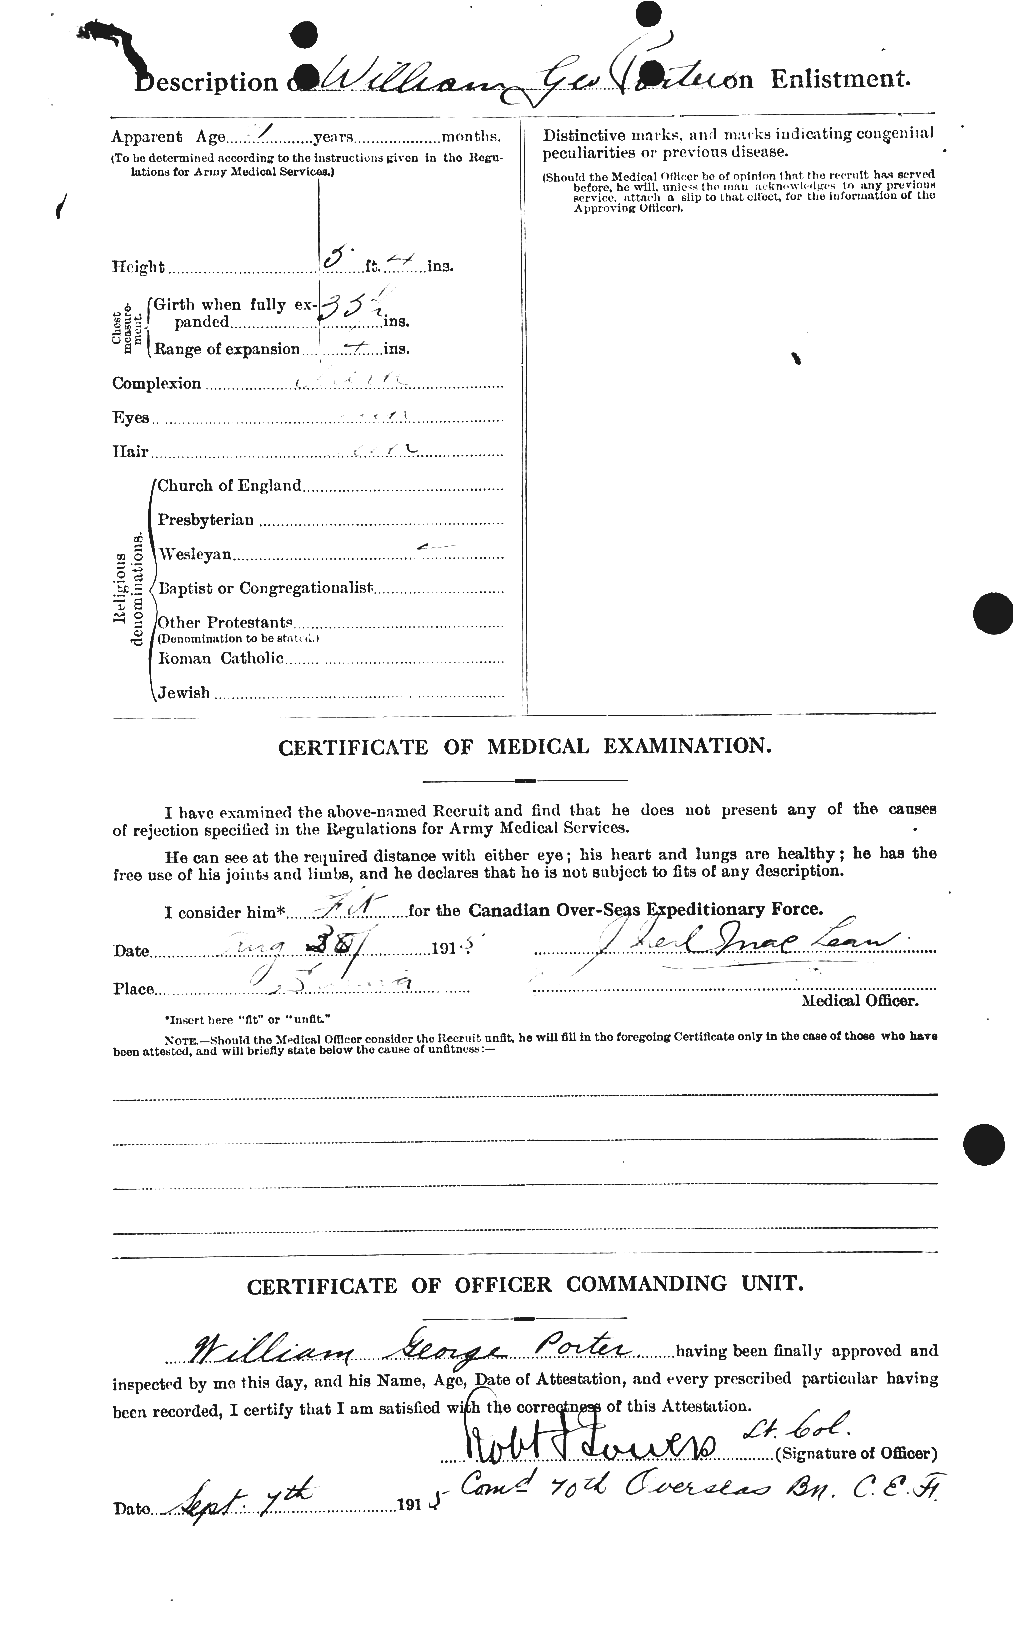 Dossiers du Personnel de la Première Guerre mondiale - CEC 583891b